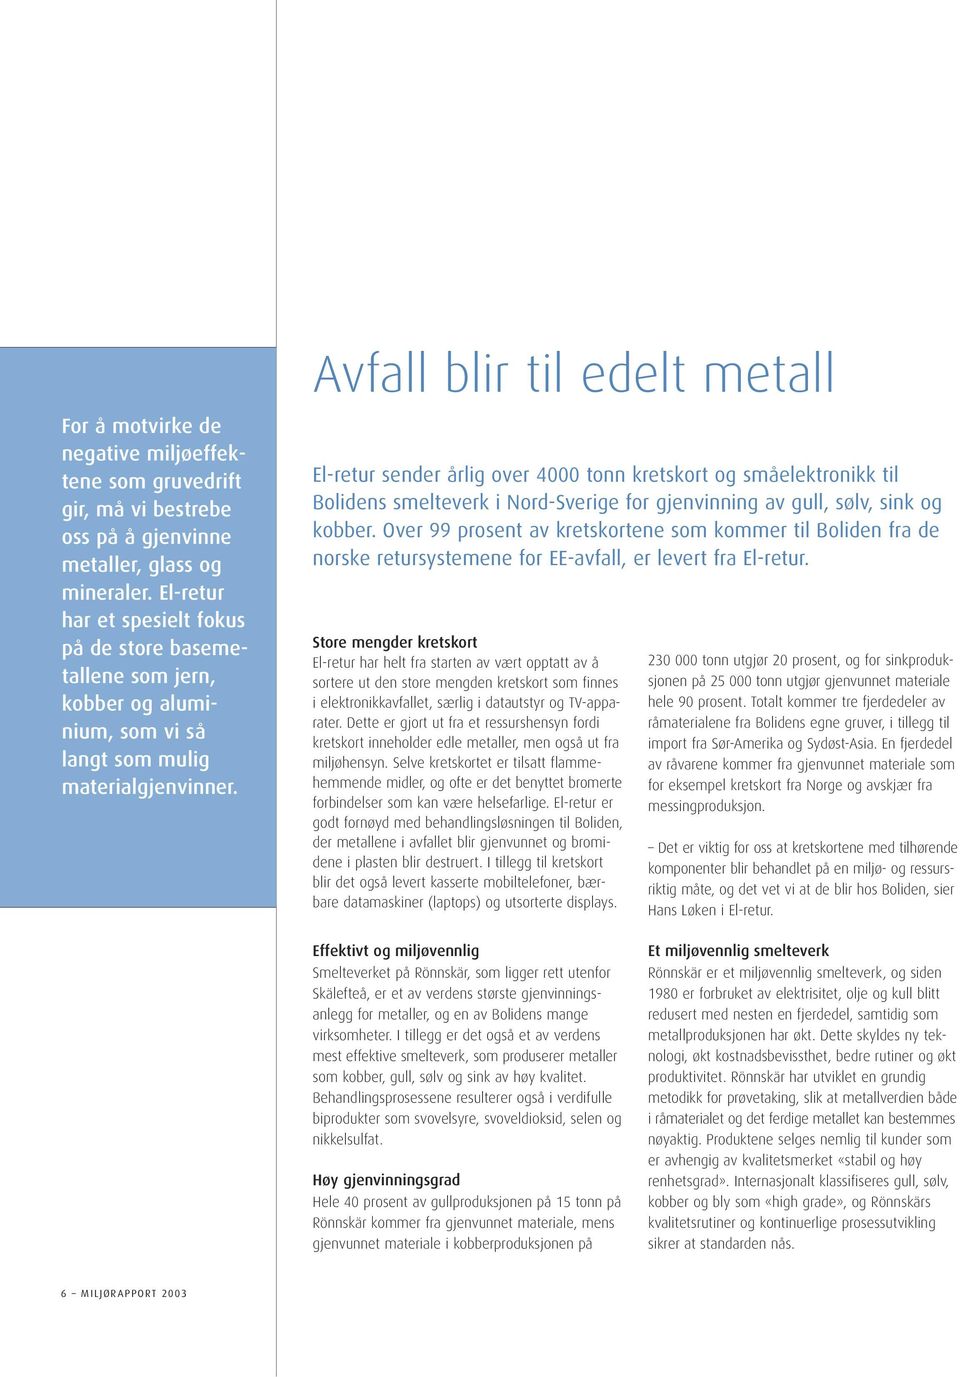 Avfall blir til edelt metall El-retur sender årlig over 4000 tonn kretskort og småelektronikk til Bolidens smelteverk i Nord-Sverige for gjenvinning av gull, sølv, sink og kobber.